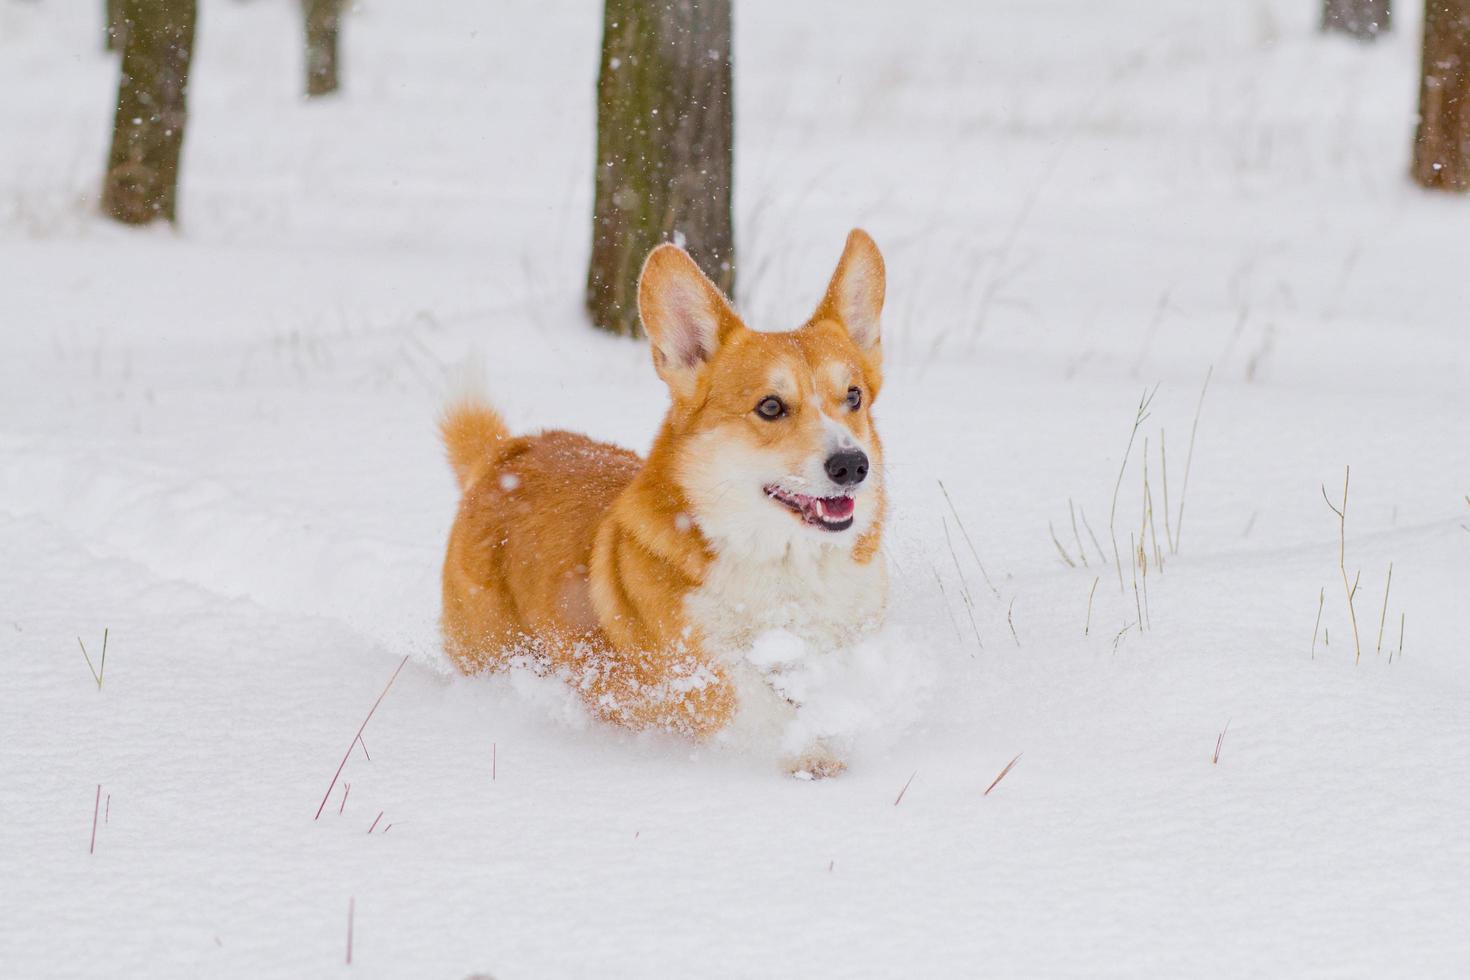 retrato de corgi de pembroke galês bonito, cachorro engraçado se divertindo na neve foto